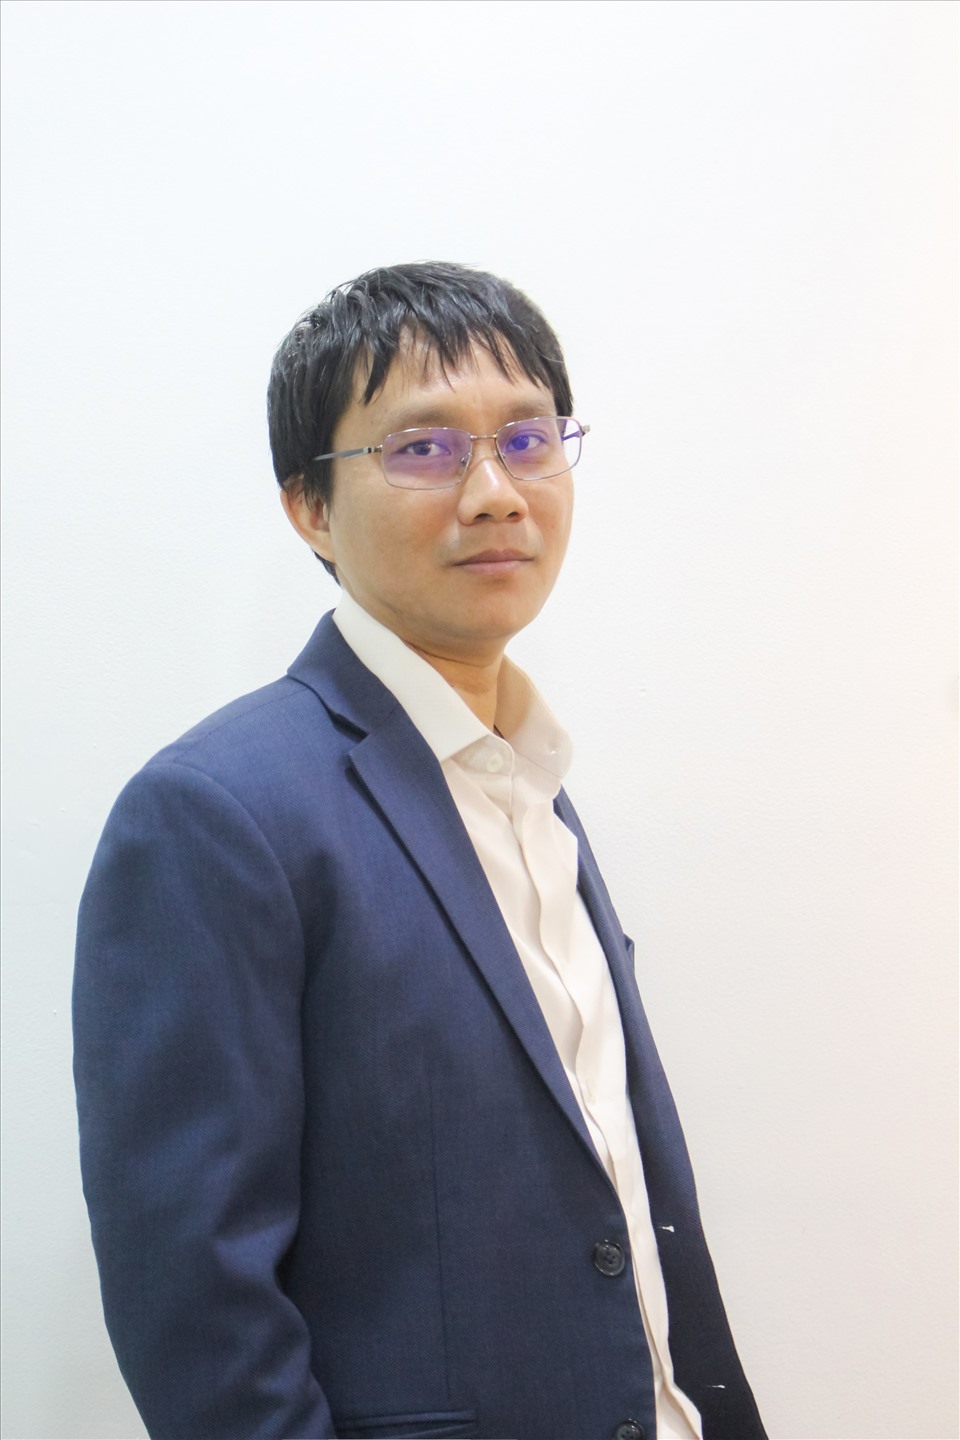 Tiến sĩ Nguyễn Quốc Toàn - Chủ tịch Hội đồng Quản trị kiêm Tổng Giám đốc Tập đoàn Giáo dục EQuest.